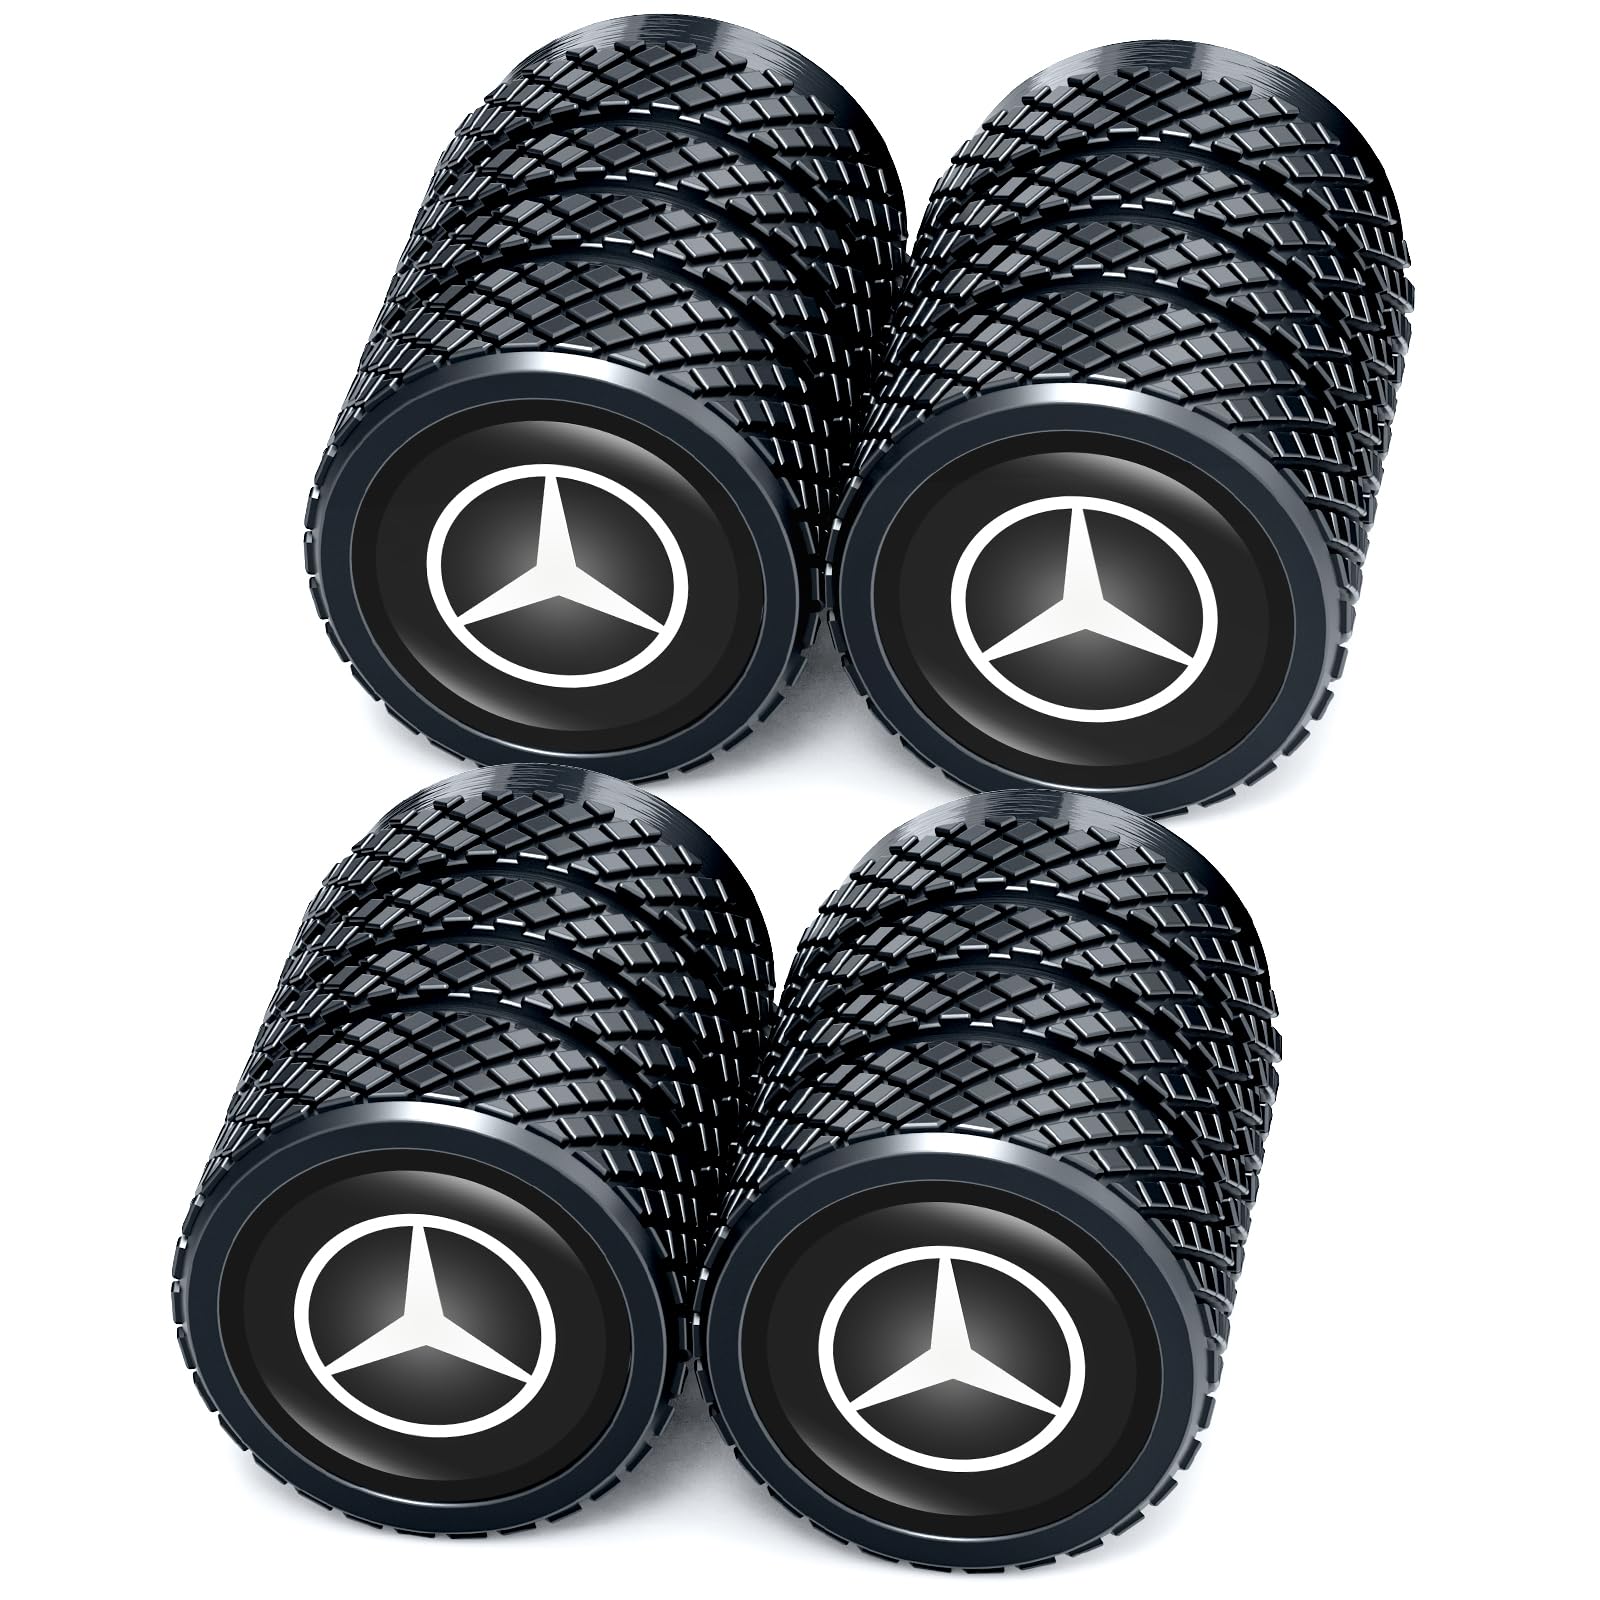 4 Stück Ventilkappen, Reifen Ventilkappen für Mercedes Benz C E S M Serie CLK GLK GL AB AMG GLS GLE AMG, Ventilkappen mit Dichtung für stabilen Reifendruck, Autoventil Kappe, Auto Zubehör von Gopz Pyt